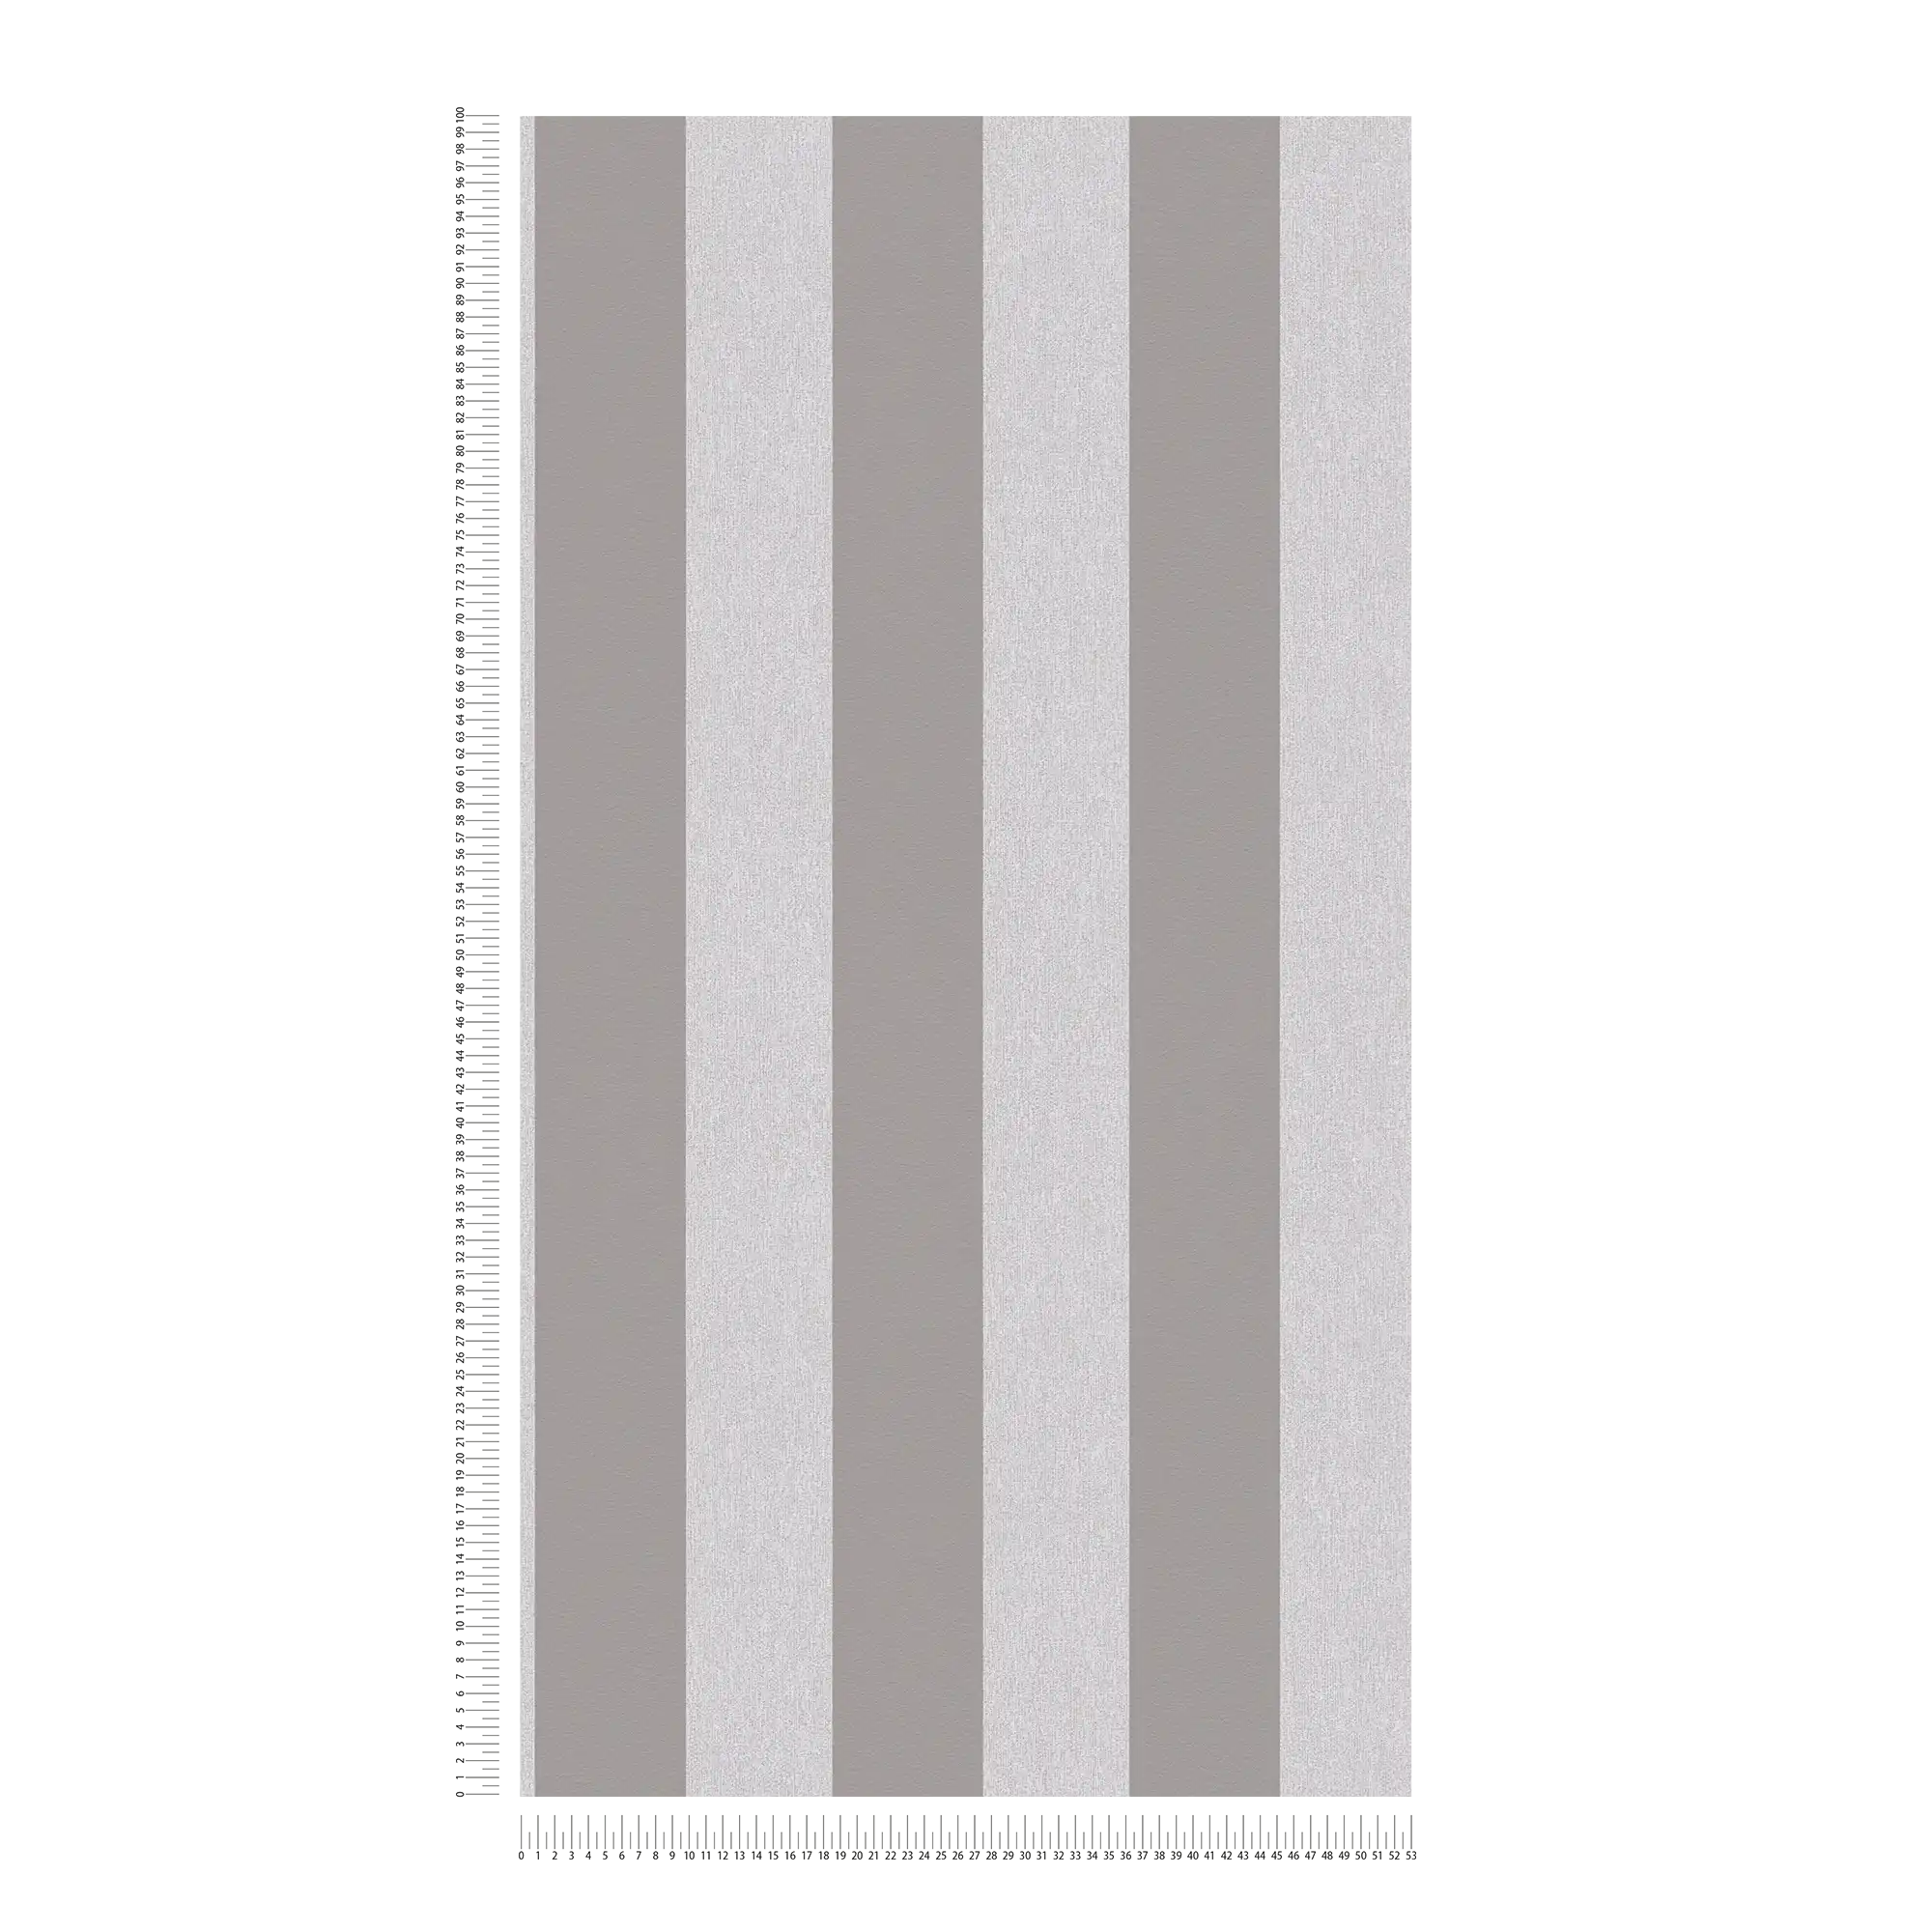             Carta da parati con motivo ottico e a righe - grigio, grigio chiaro
        